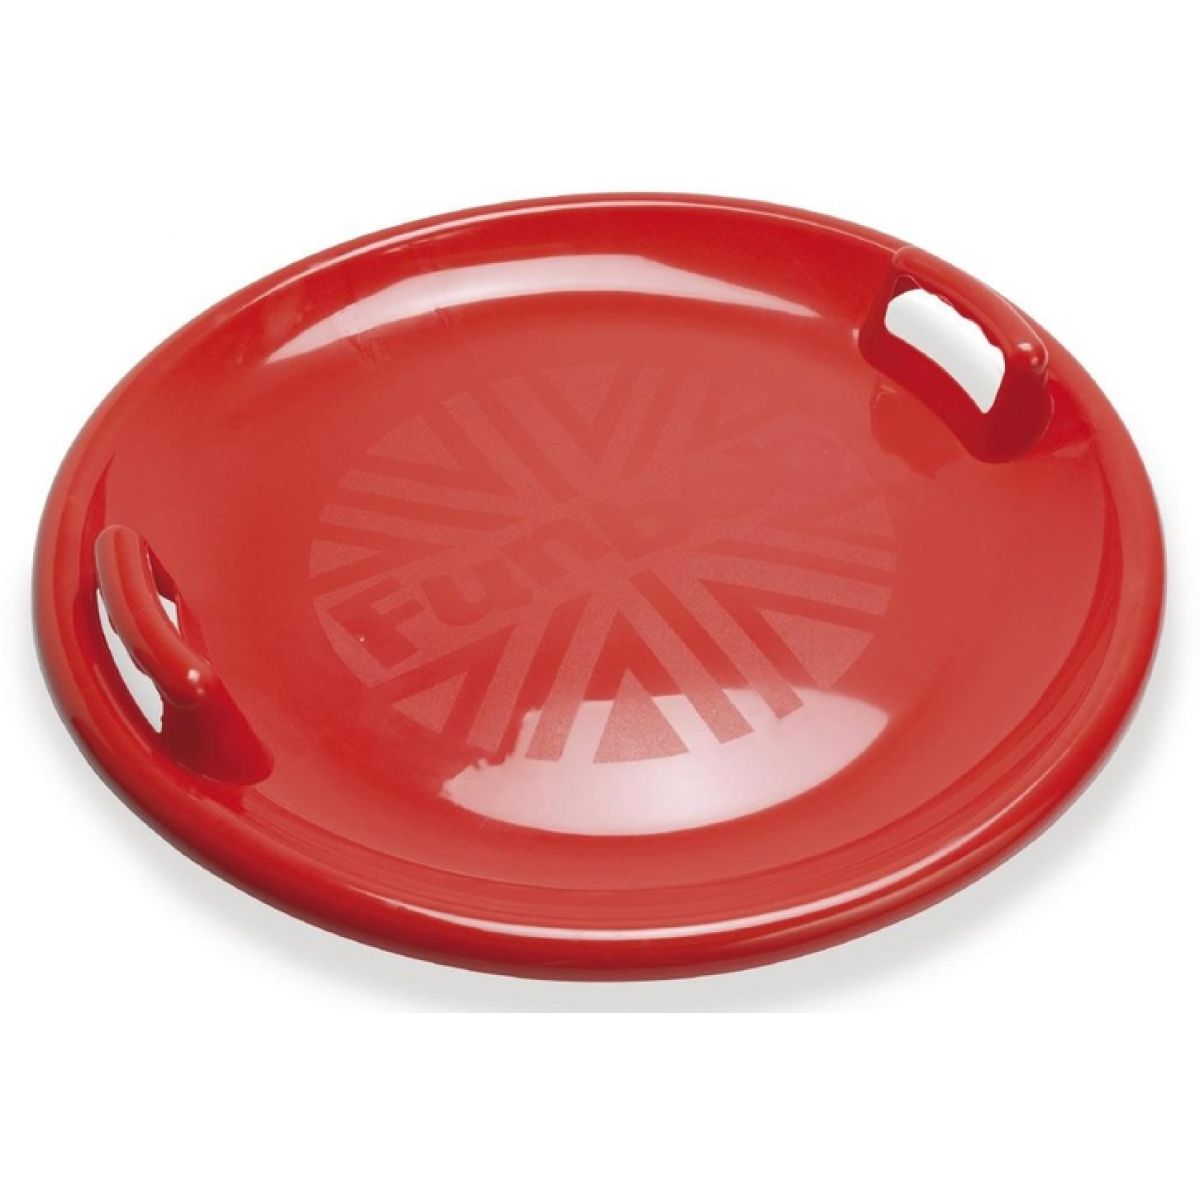 Dantoy Zábavný talíř na sníh s držadly - průměr 63 cm - Červená